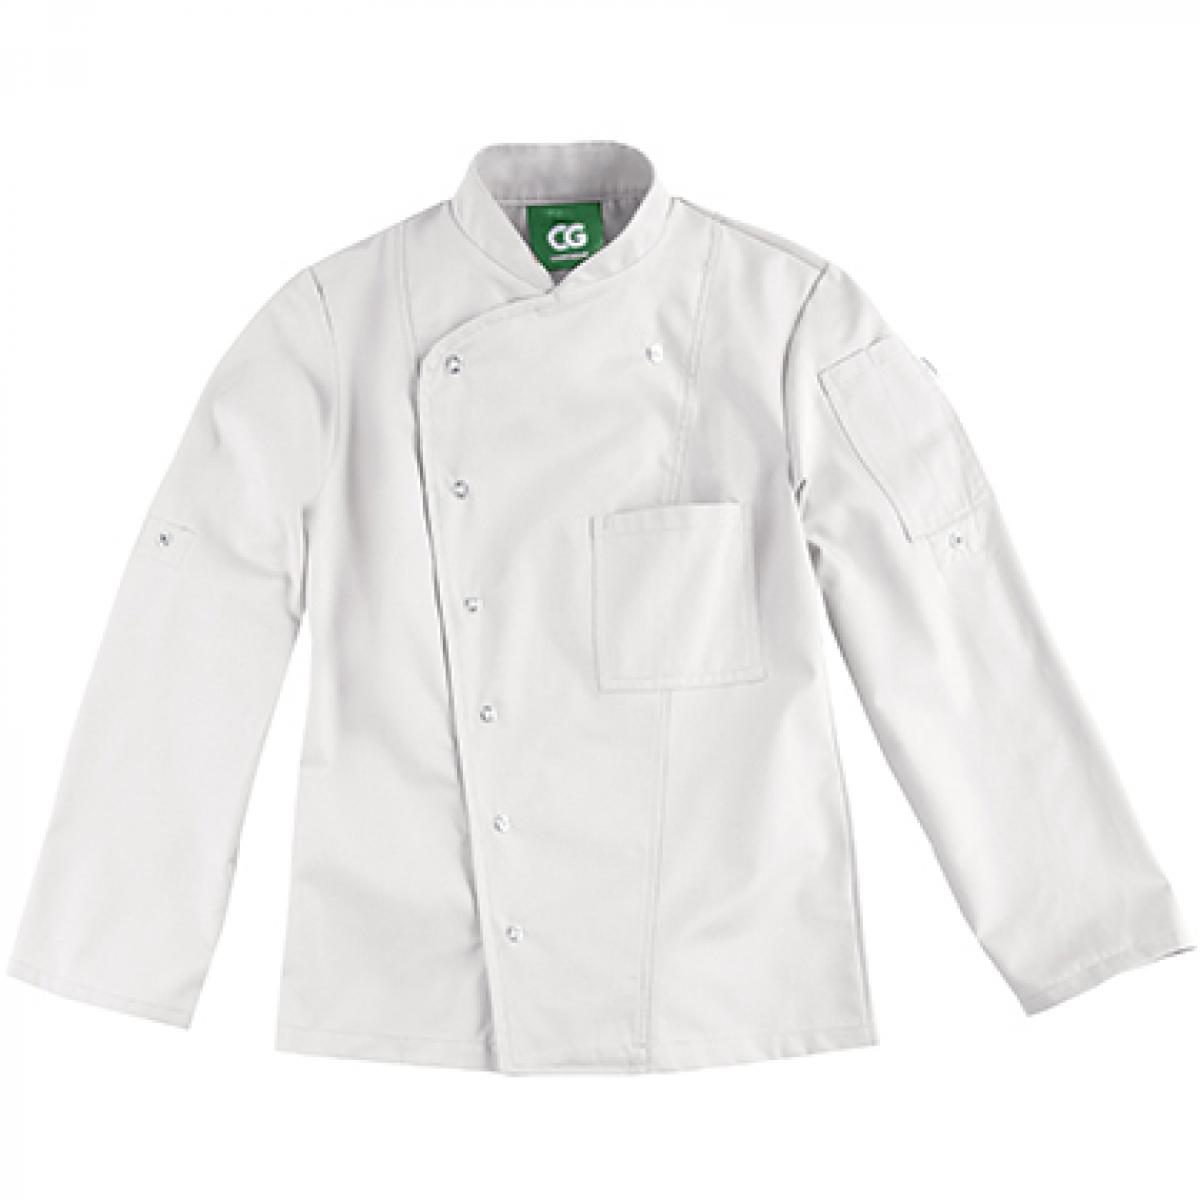 Hersteller: CG Workwear Herstellernummer: 03105-44 Artikelbezeichnung: Ladies´ Chef Jacket Turin GreeNature bis 95 °C waschbar Farbe: Cool Grey